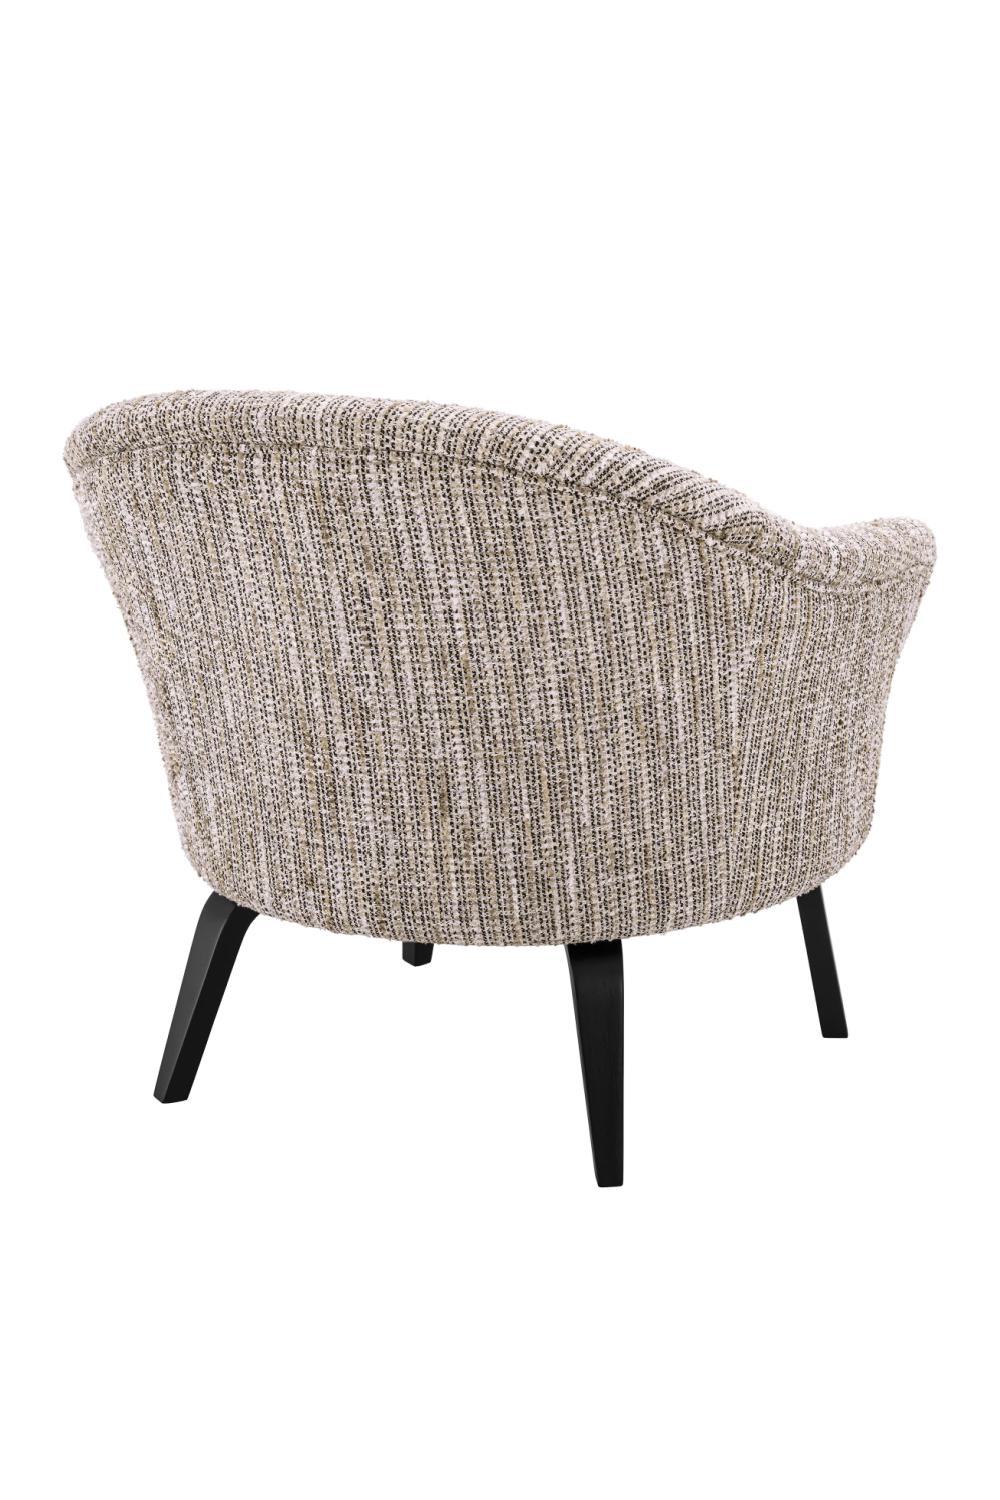 Modern Barrel Lounge Chair | Eichholtz Moretti | Oroa.com